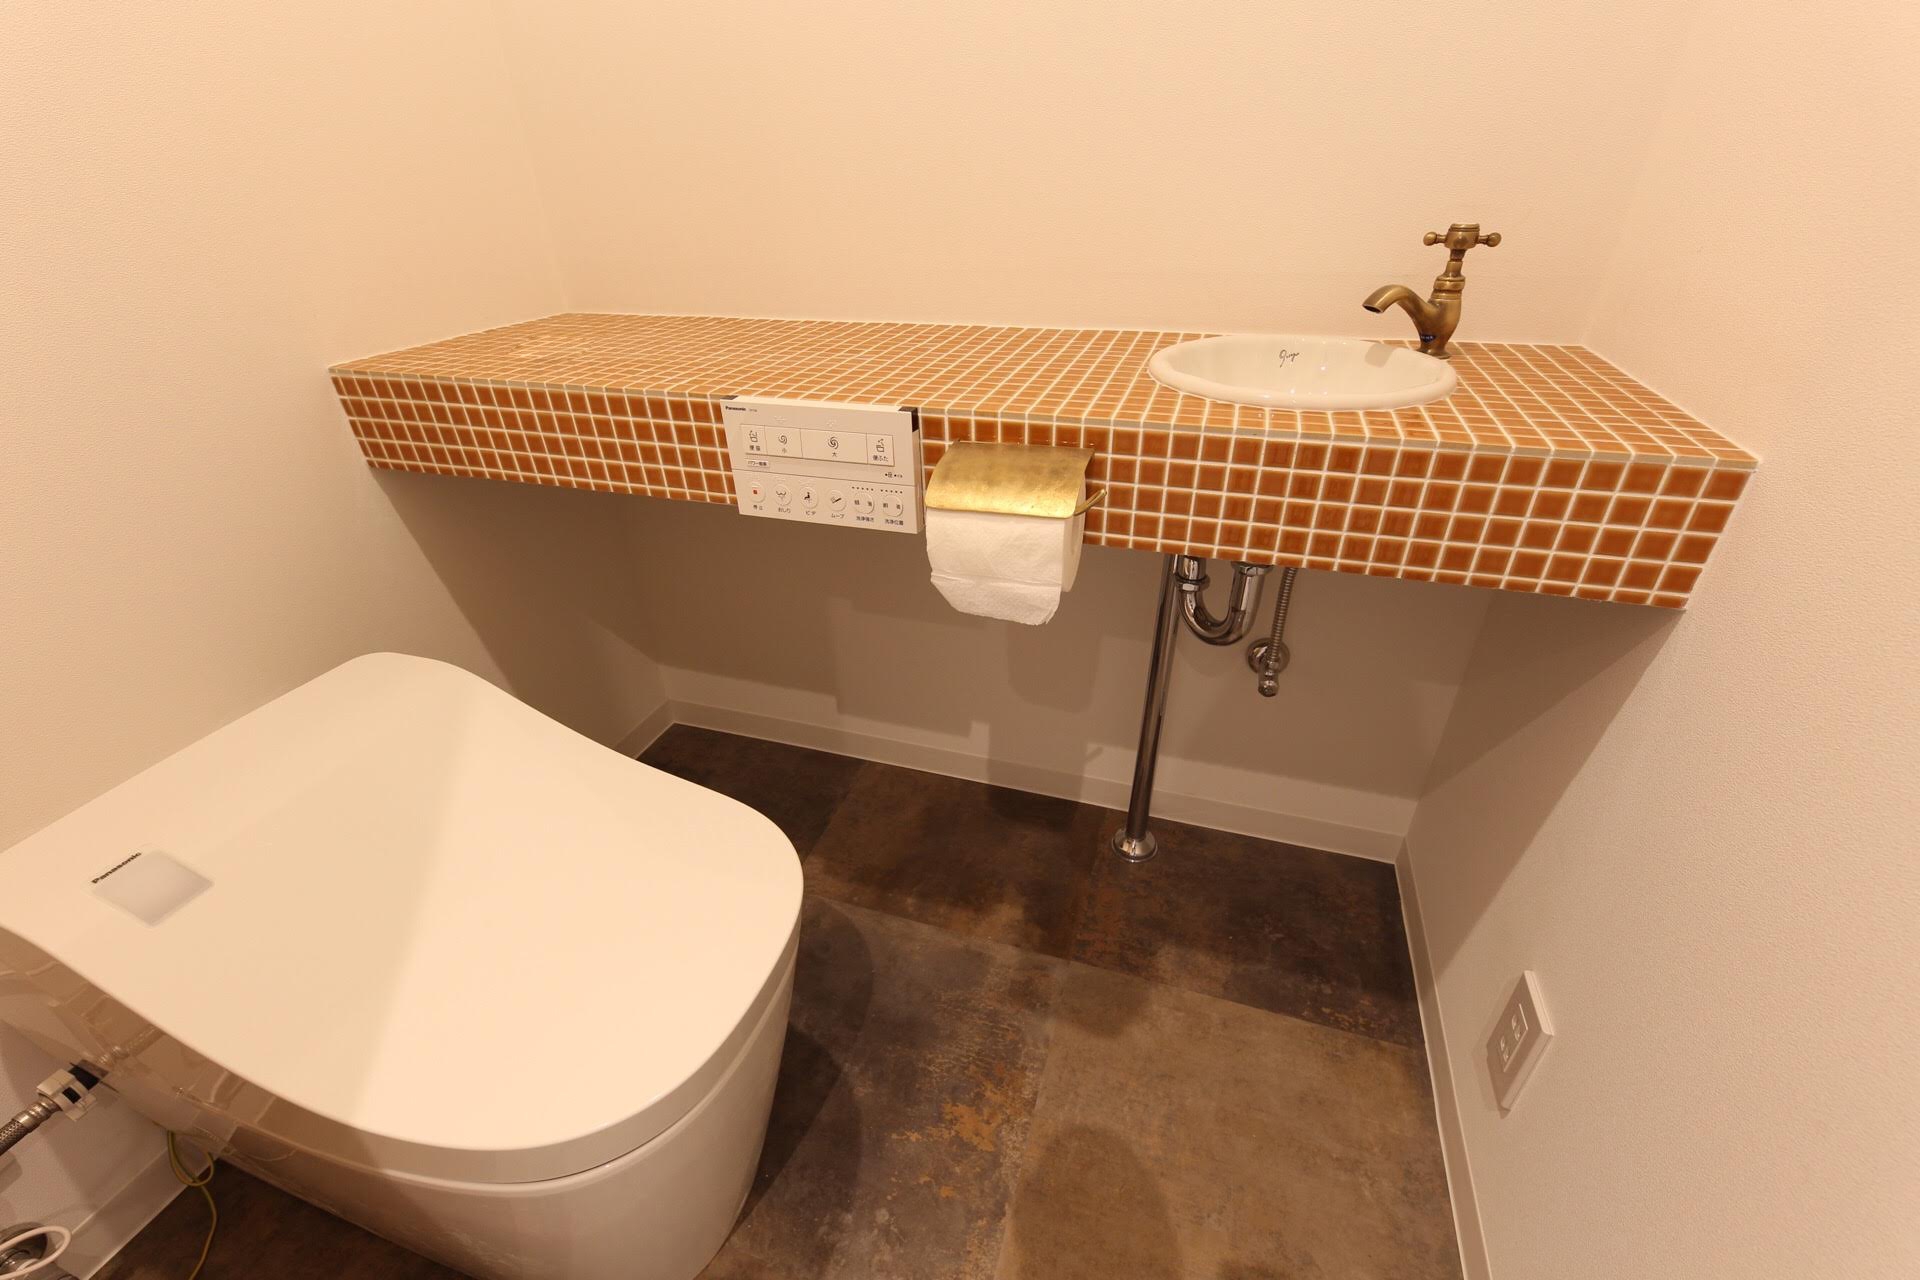 タンクレストイレはアラウーノの最新機種を選びました。清潔性、インテリア性を兼ね揃えたトイレです。